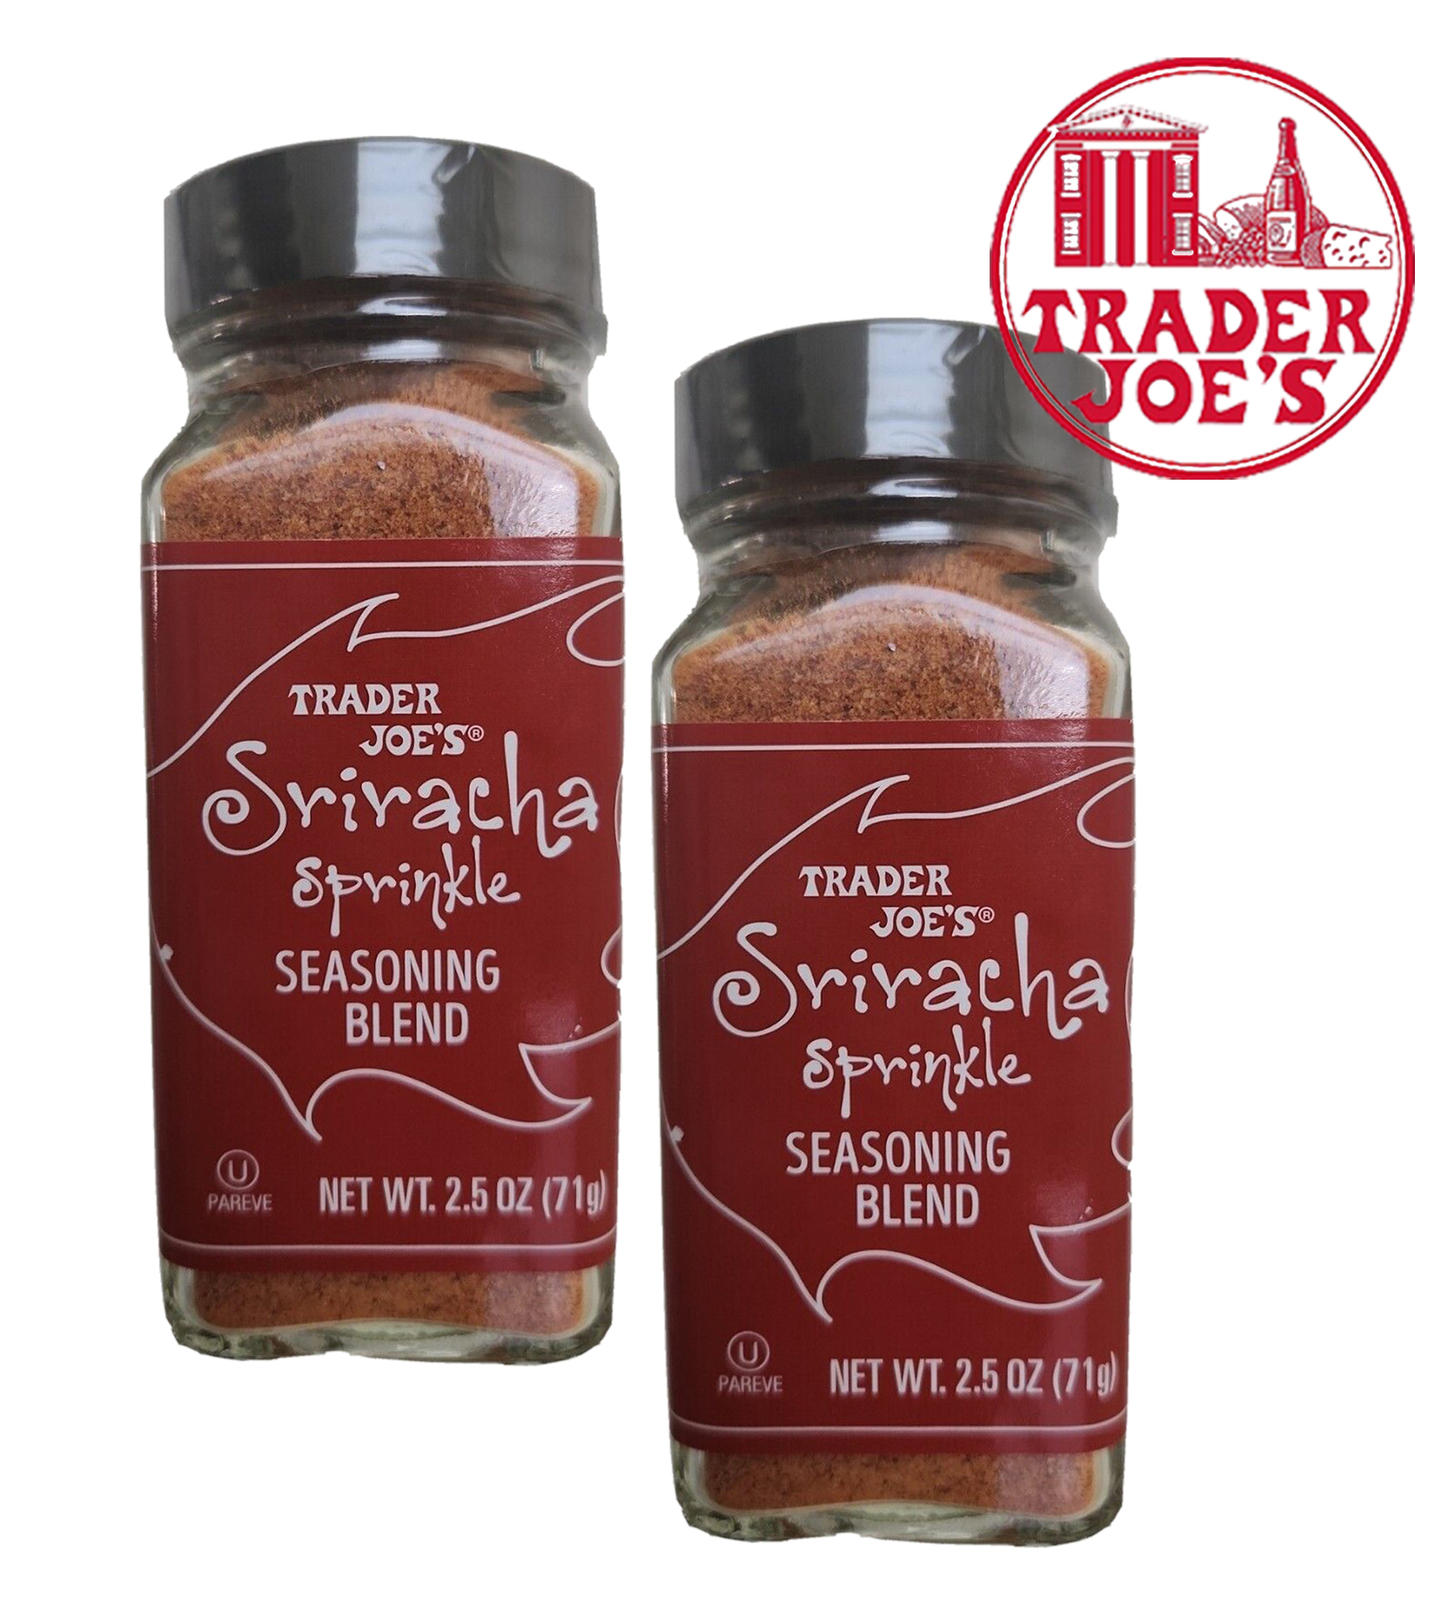 Trader Joe's Seasoning Blend In A Pickle - 2 Pack - 2.3 oz Jar